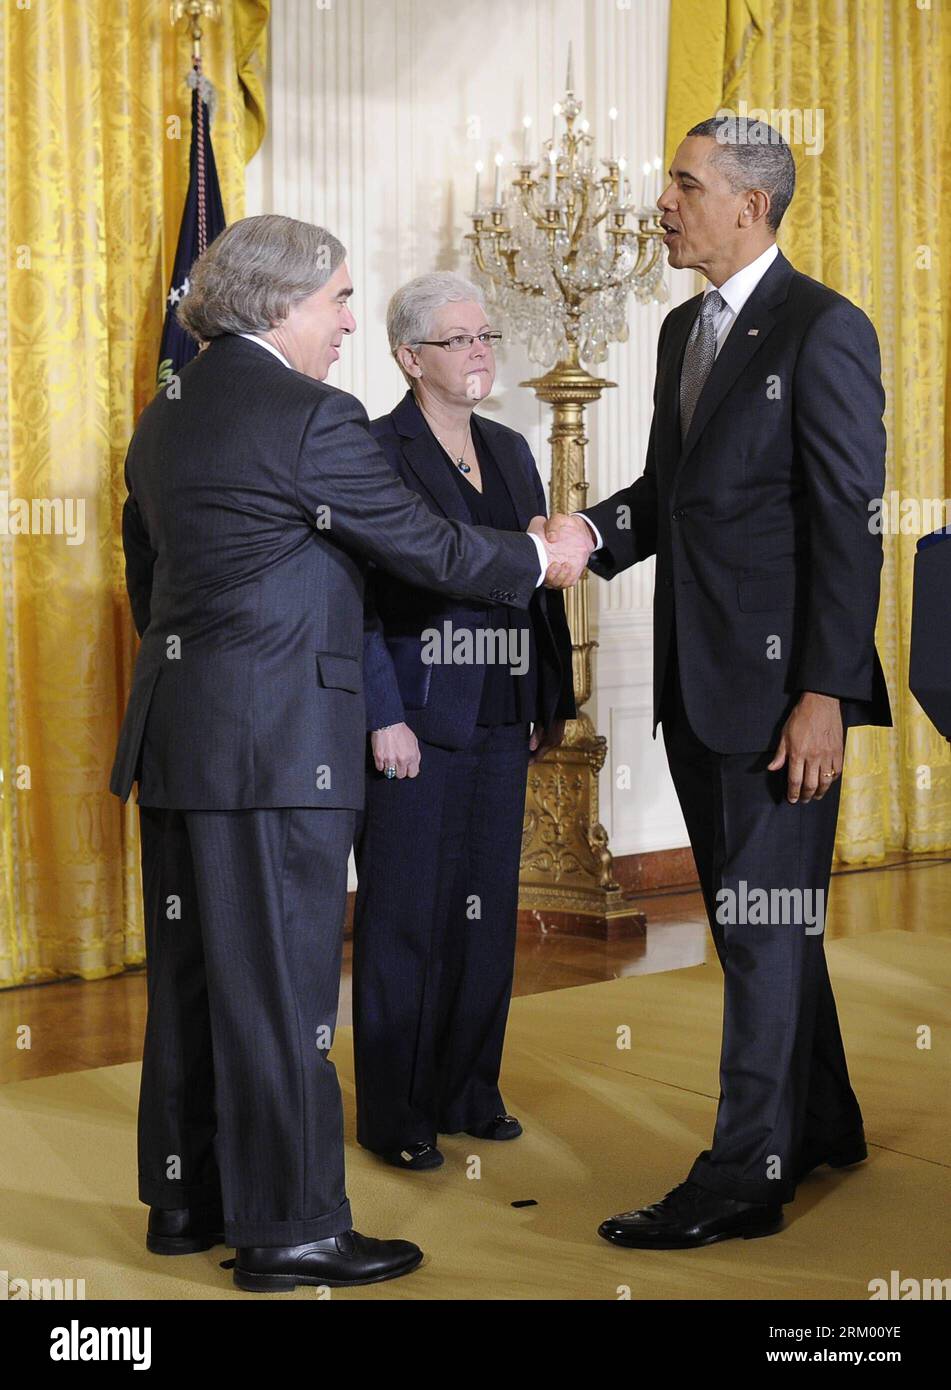 Bildnummer : 59299647 Datum : 04.03.2013 Copyright : imago/Xinhua (130304) -- WASHINGTON D.C., 4 mars 2013 (Xinhua) -- le président américain Barack Obama (à droite) serre la main du scientifique du MIT Ernest Moniz (à gauche) et de l'administratrice adjointe de l'EPA Gina McCarthy lors d'une cérémonie de nomination dans la salle est de la Maison Blanche à Washington D.C., capitale des États-Unis, le 4 mars 2013. Obama a annoncé lundi qu'il avait choisi Ernest Moniz pour être son prochain secrétaire à l'énergie, et Gina McCarthy pour diriger l'Agence de protection de l'environnement (EPA). (Xinhua/Zhang Jun) PUBLICATION US-WASHINGTON-POLITCIS-OBAMA-NOMINATION Banque D'Images